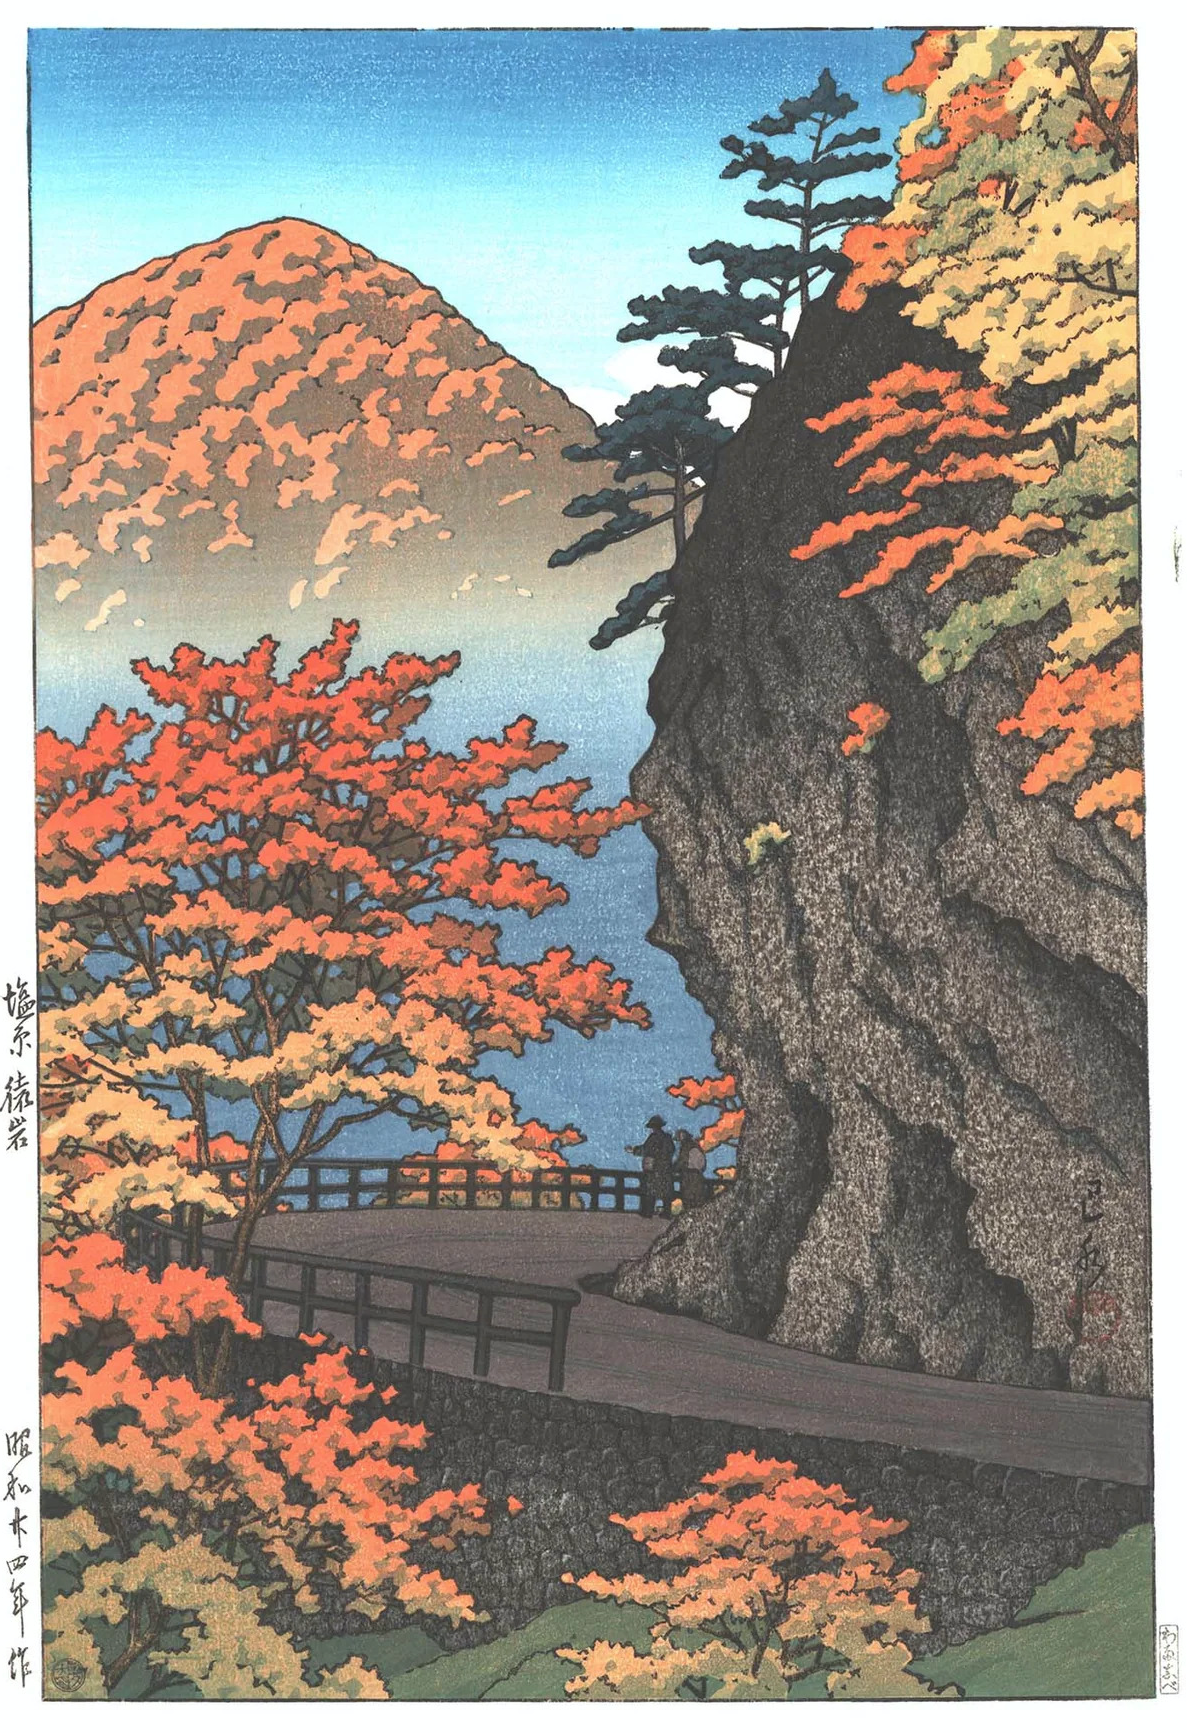 الخريف في سارويوا، شيوبارا by Hasui Kawase - 1949 - الأبعاد: 38 × 24.4 سم 